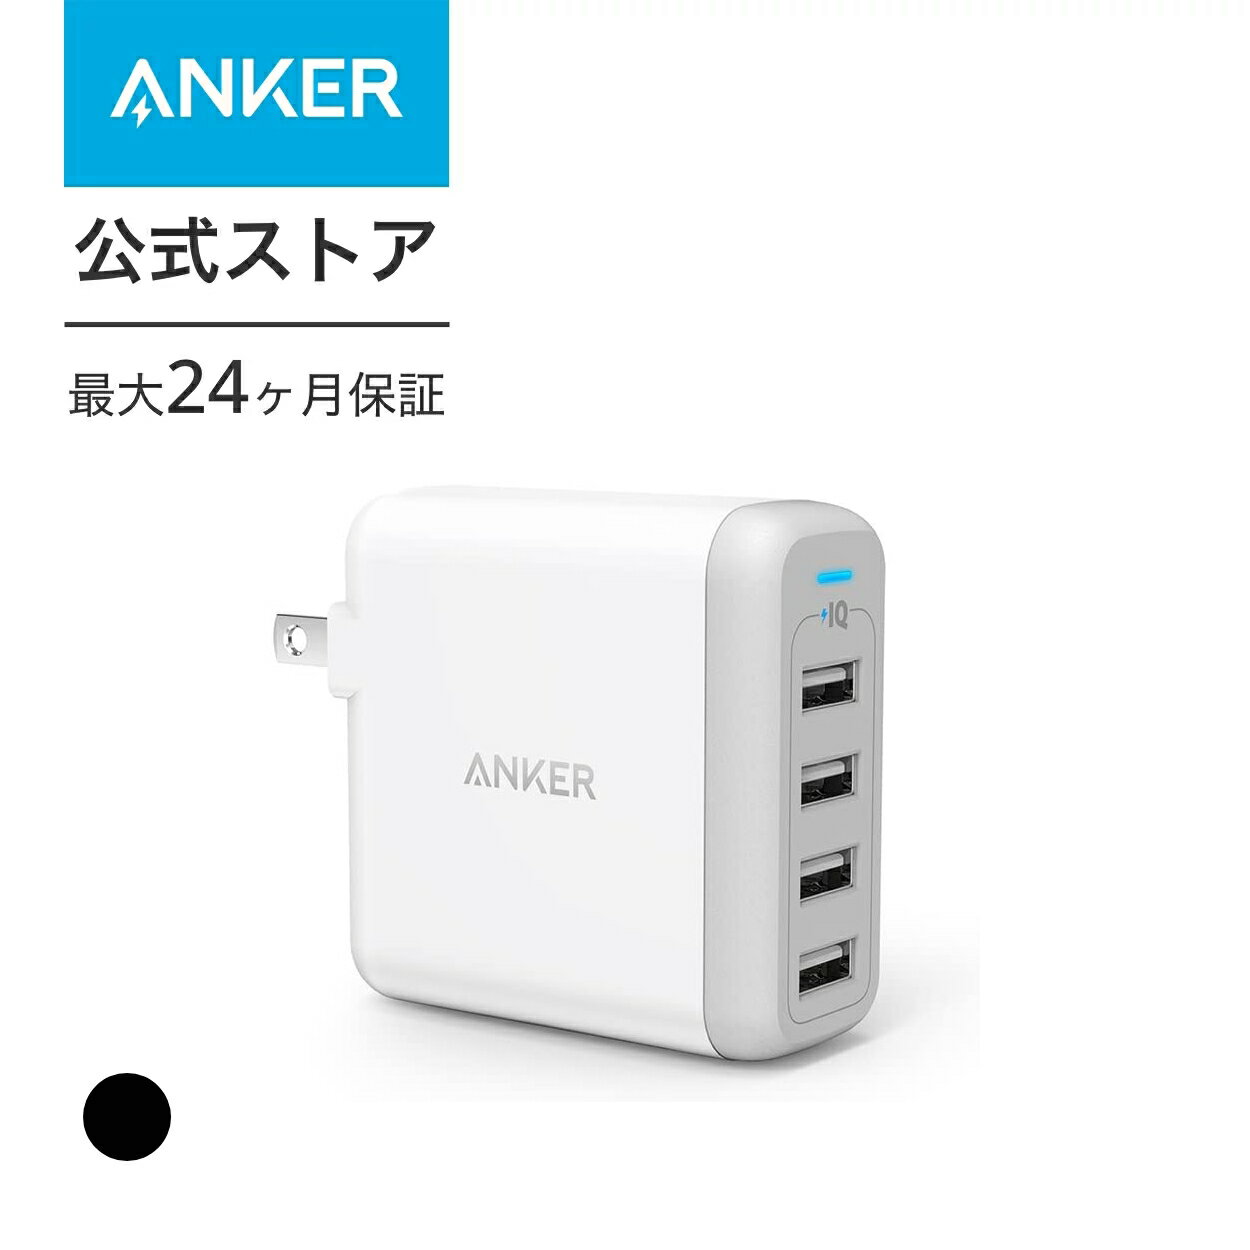 急速充電器 Anker PowerPort 4 USB急速充電器 40W4ポート マルチポート 折りたたみ式プラグ搭載 海外対応 アダプター【PowerIQ VoltageBoost搭載】(ブラック ホワイト)